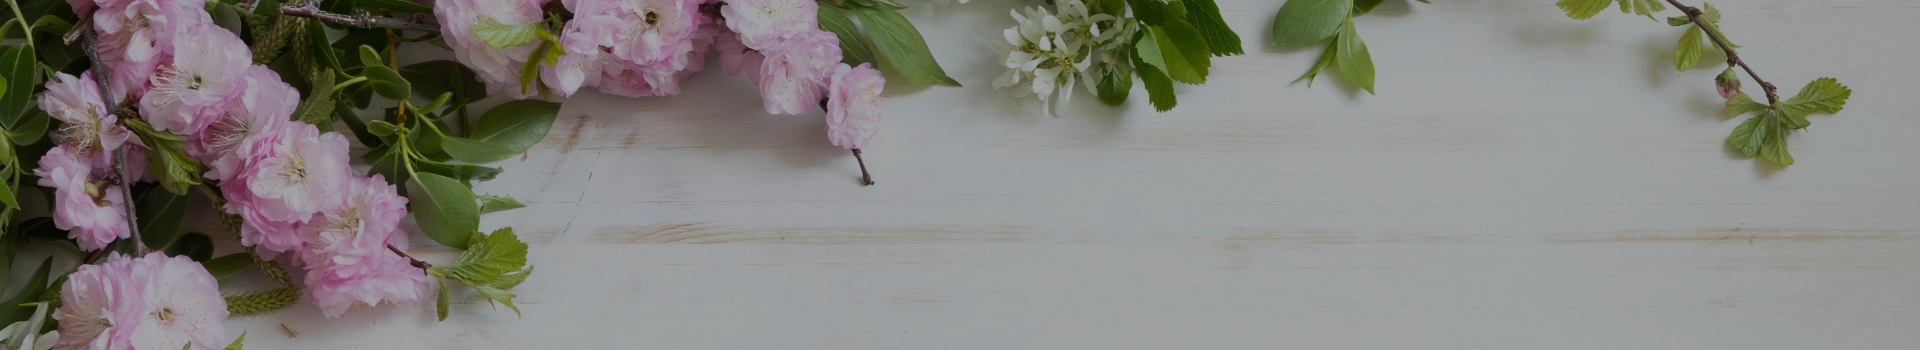 Kwiaty na drewnianym stole